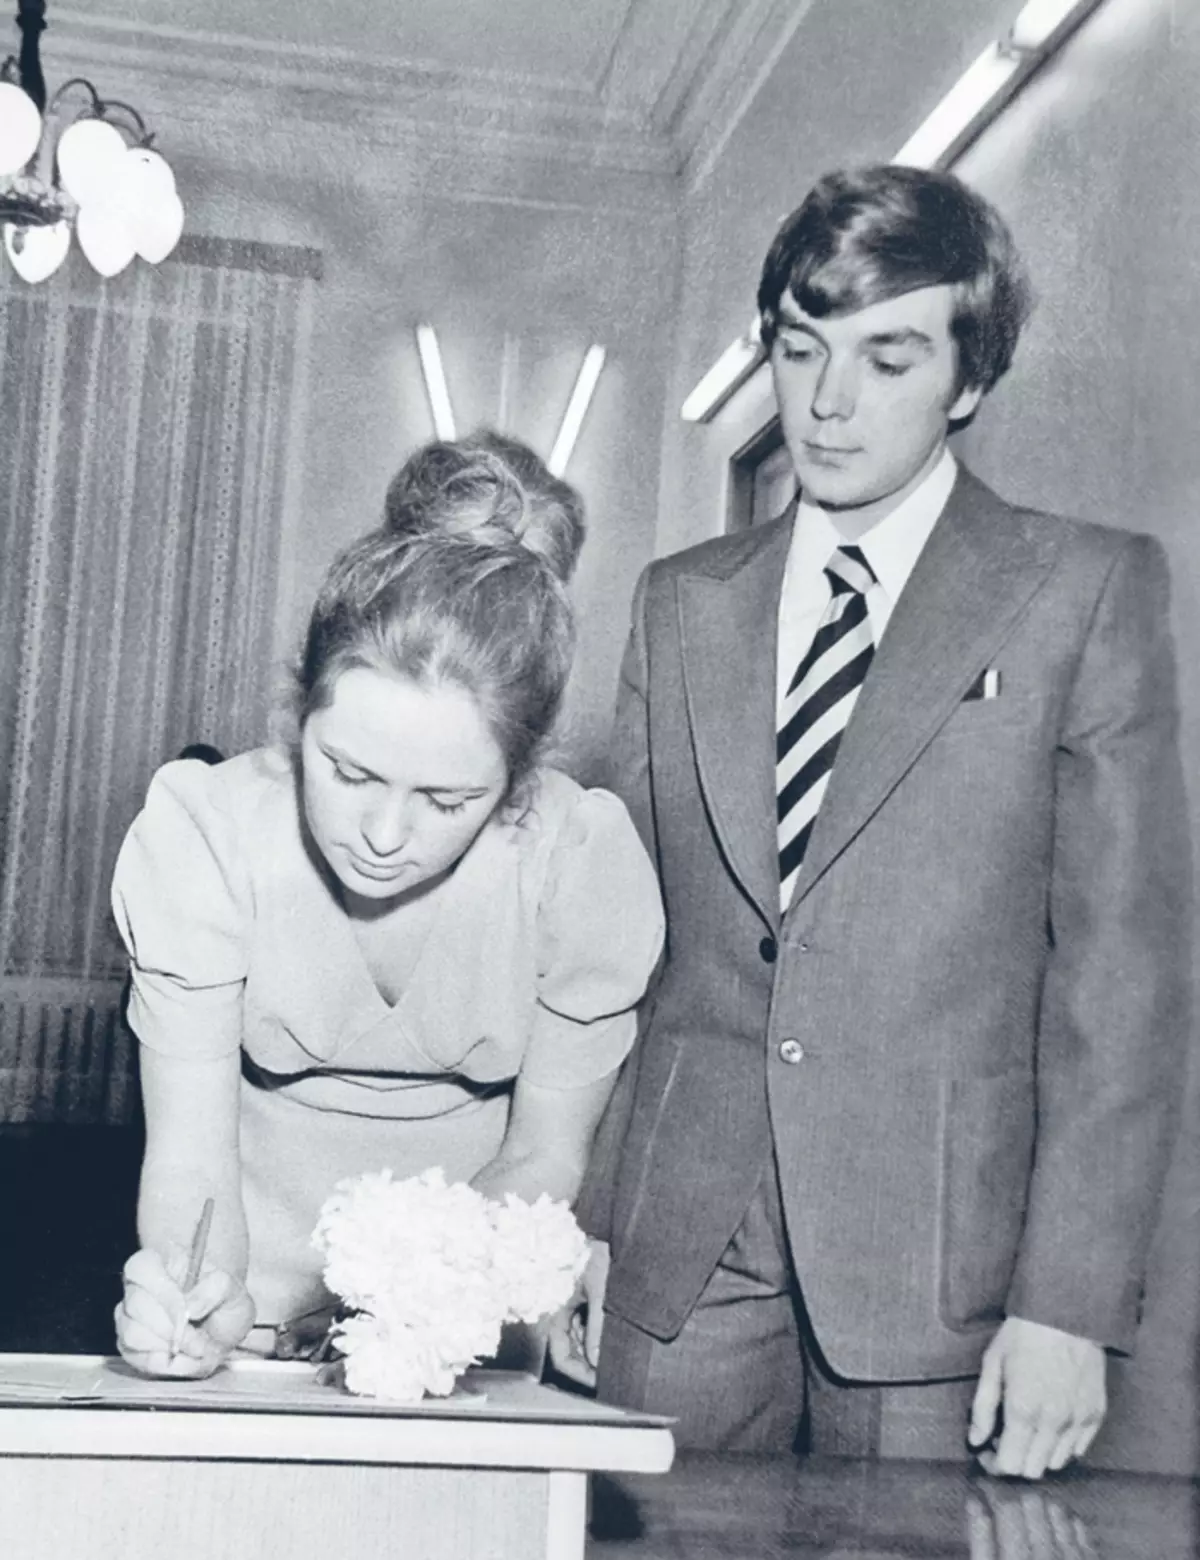 یوری و الینور نوجوانان بیشتری را ملاقات کردند، و همسر و همسرش بهار 1975 شد